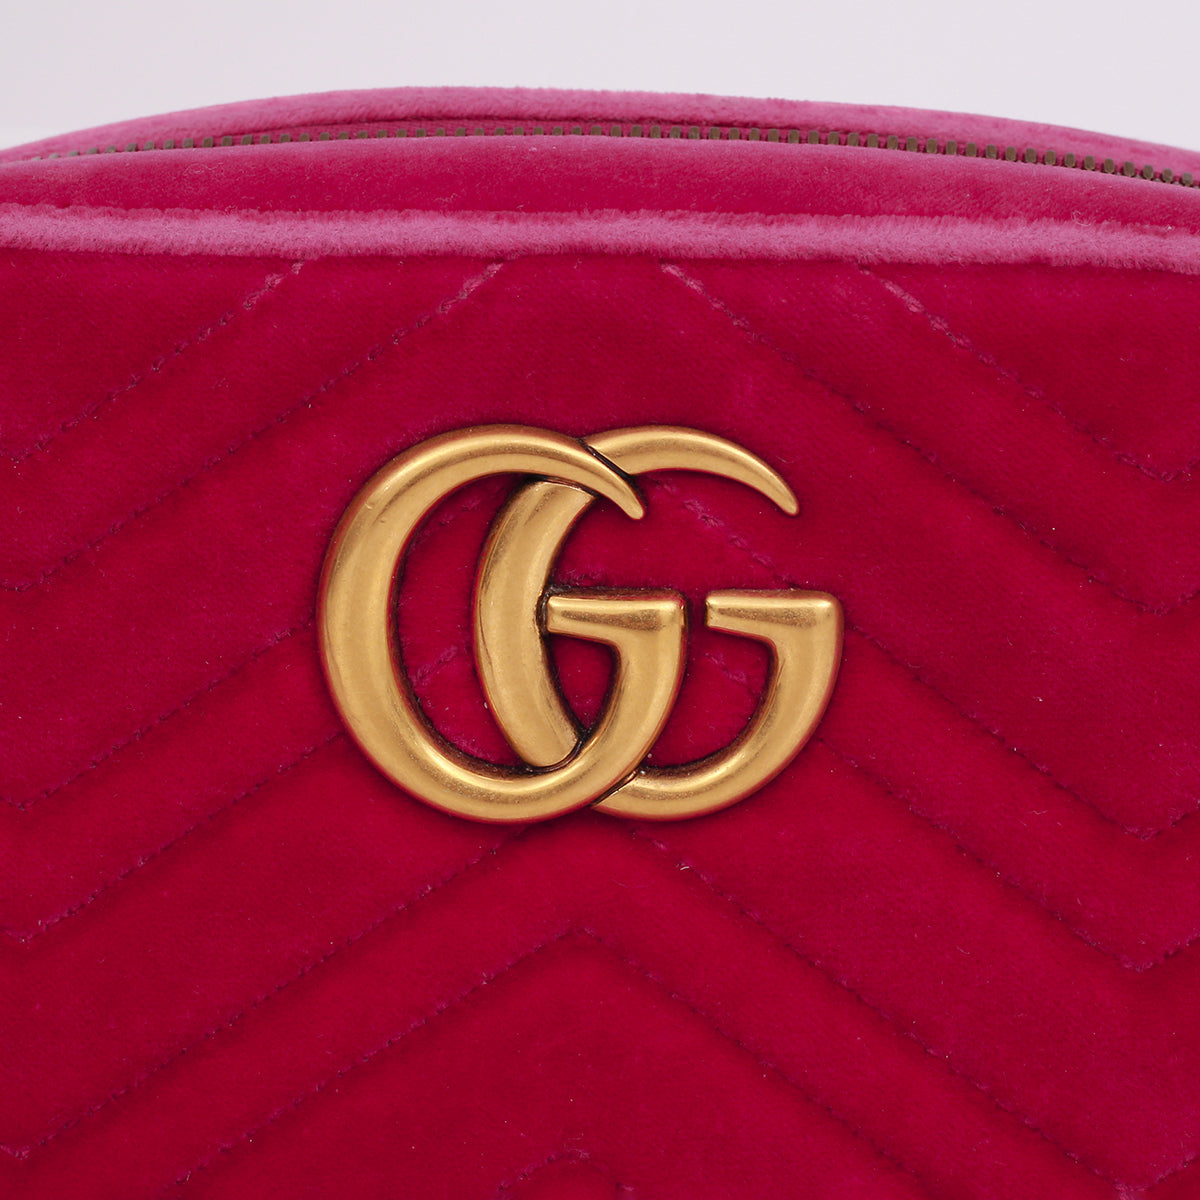 Bolsa Gucci Marmont Veludo Rosa